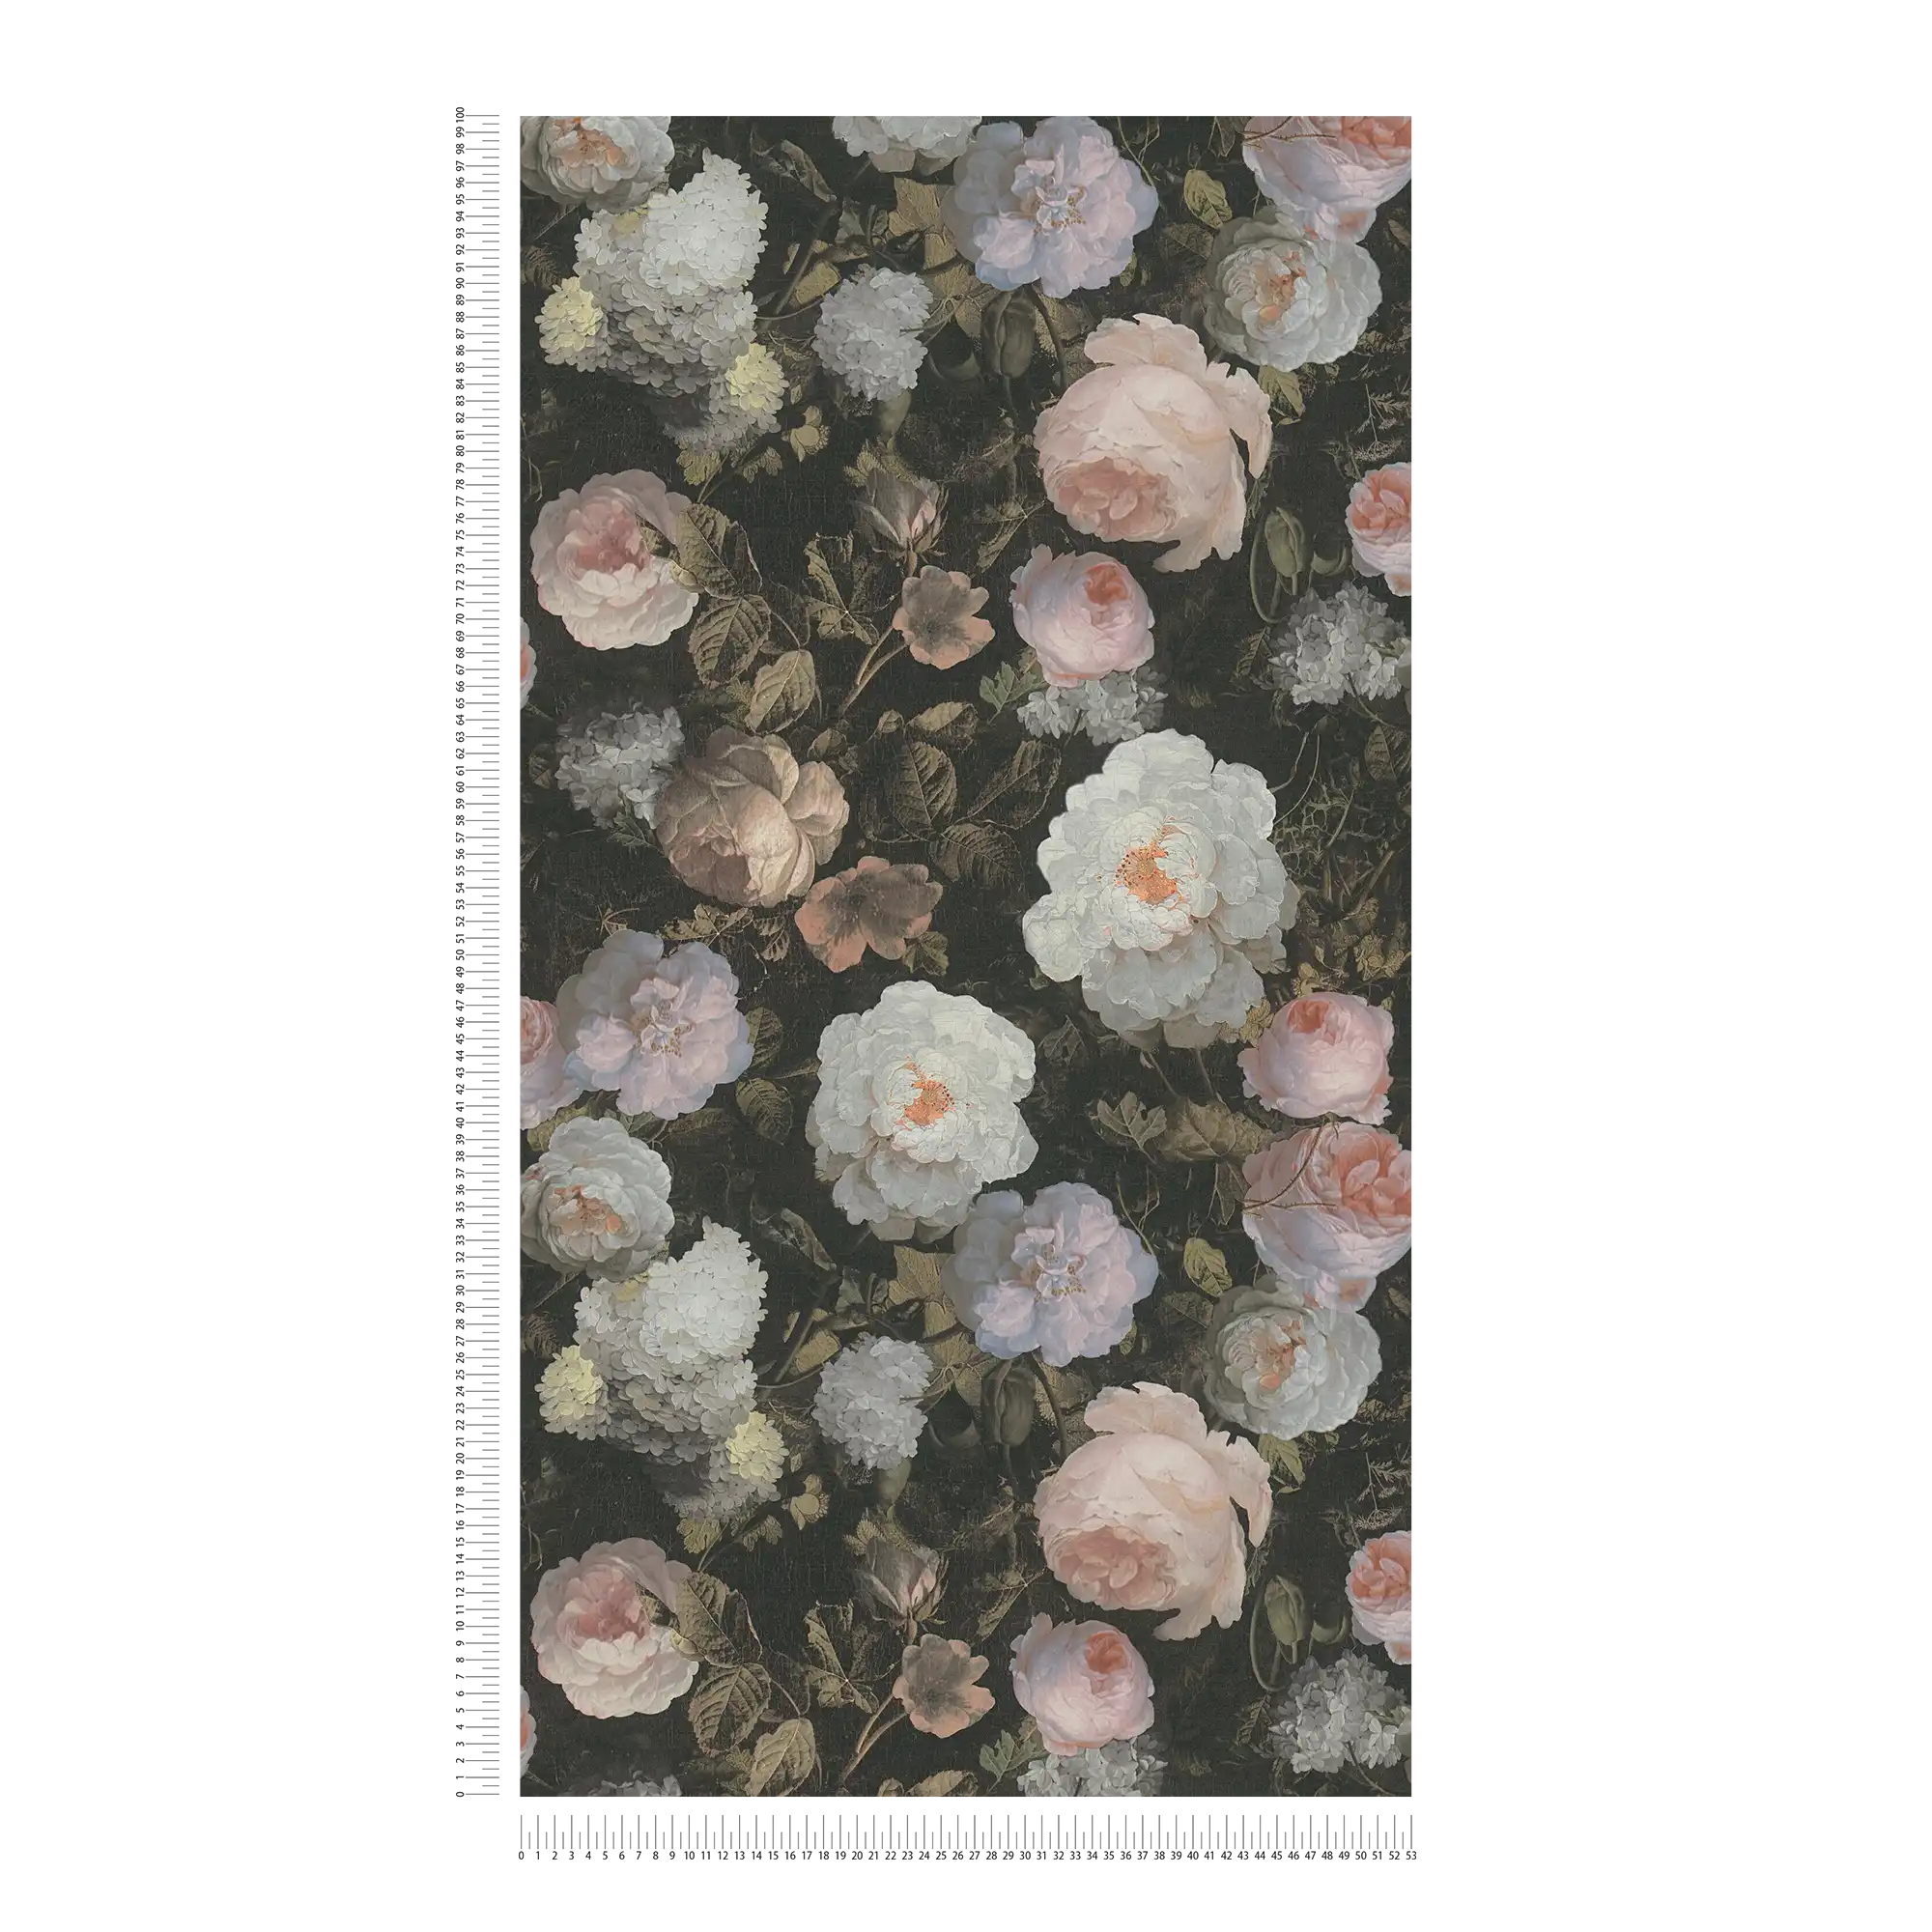             Rozenbehang met bloemenpatroon - roze, groen, wit
        